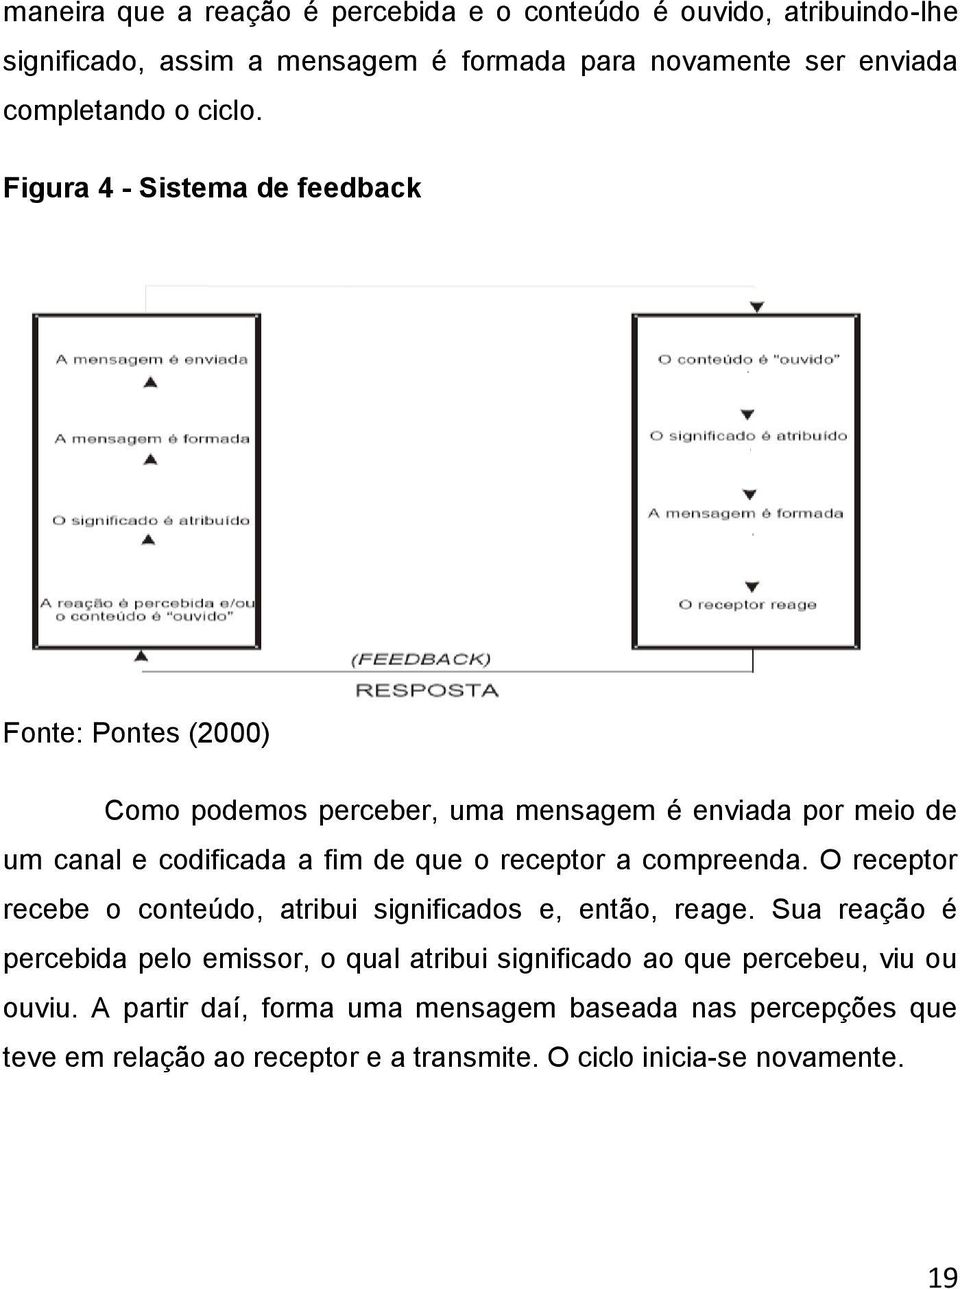 Figura 4 - Sistema de feedback Fonte: Pontes (2000) Como podemos perceber, uma mensagem é enviada por meio de um canal e codificada a fim de que o receptor